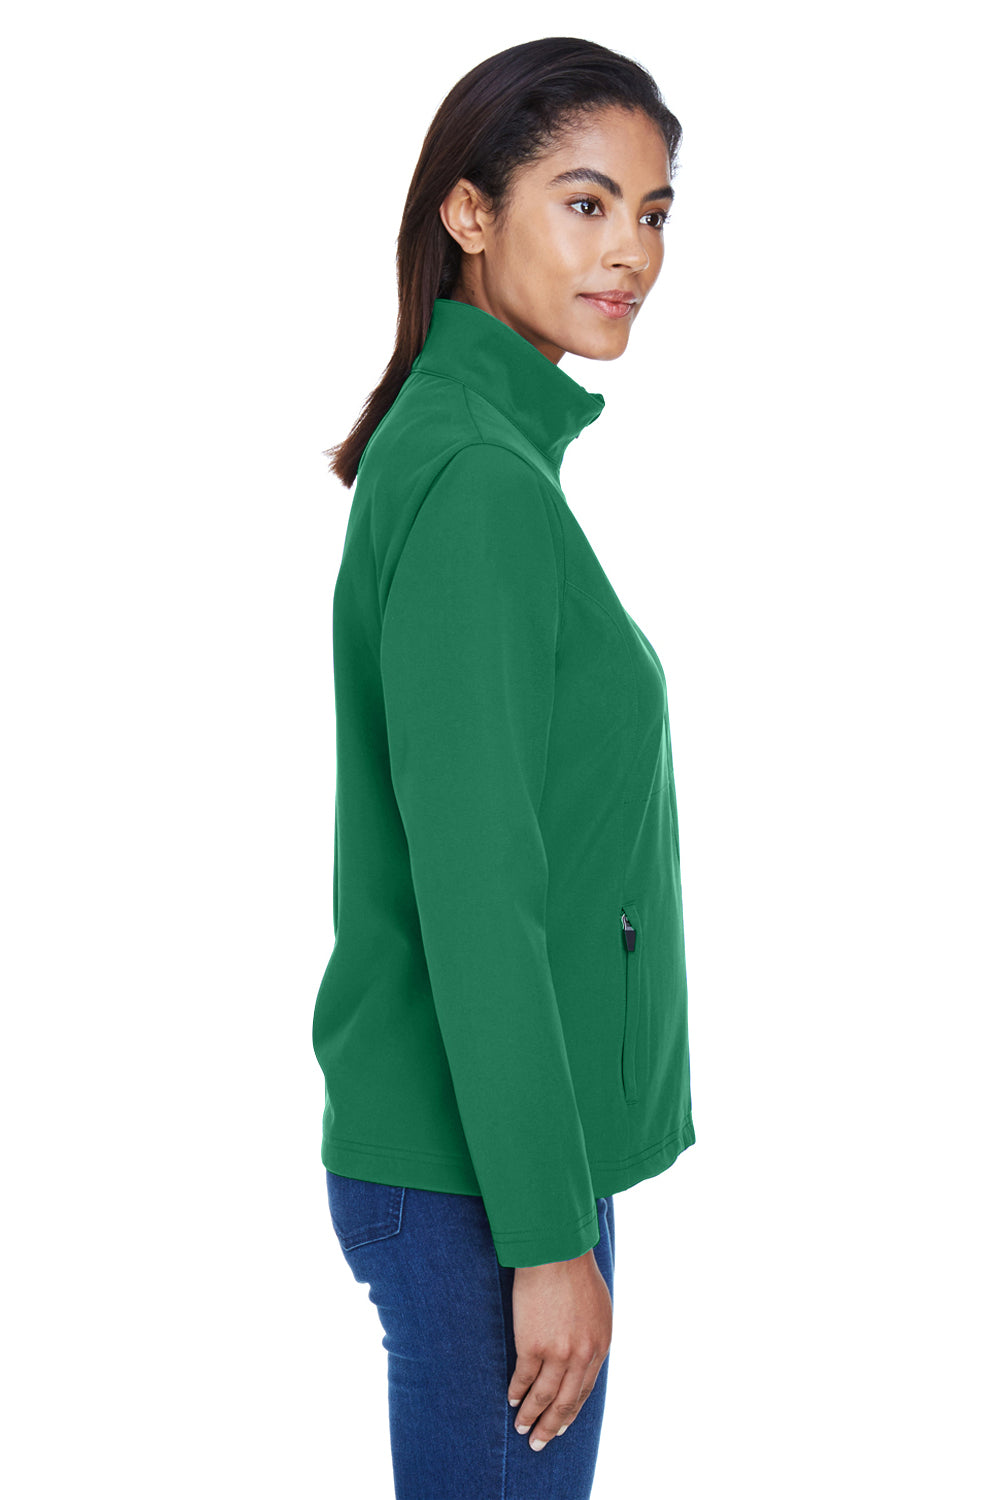 Team 365 TT80W Womens Leader Waterproof Full Zip Jacket Kelly Green Side